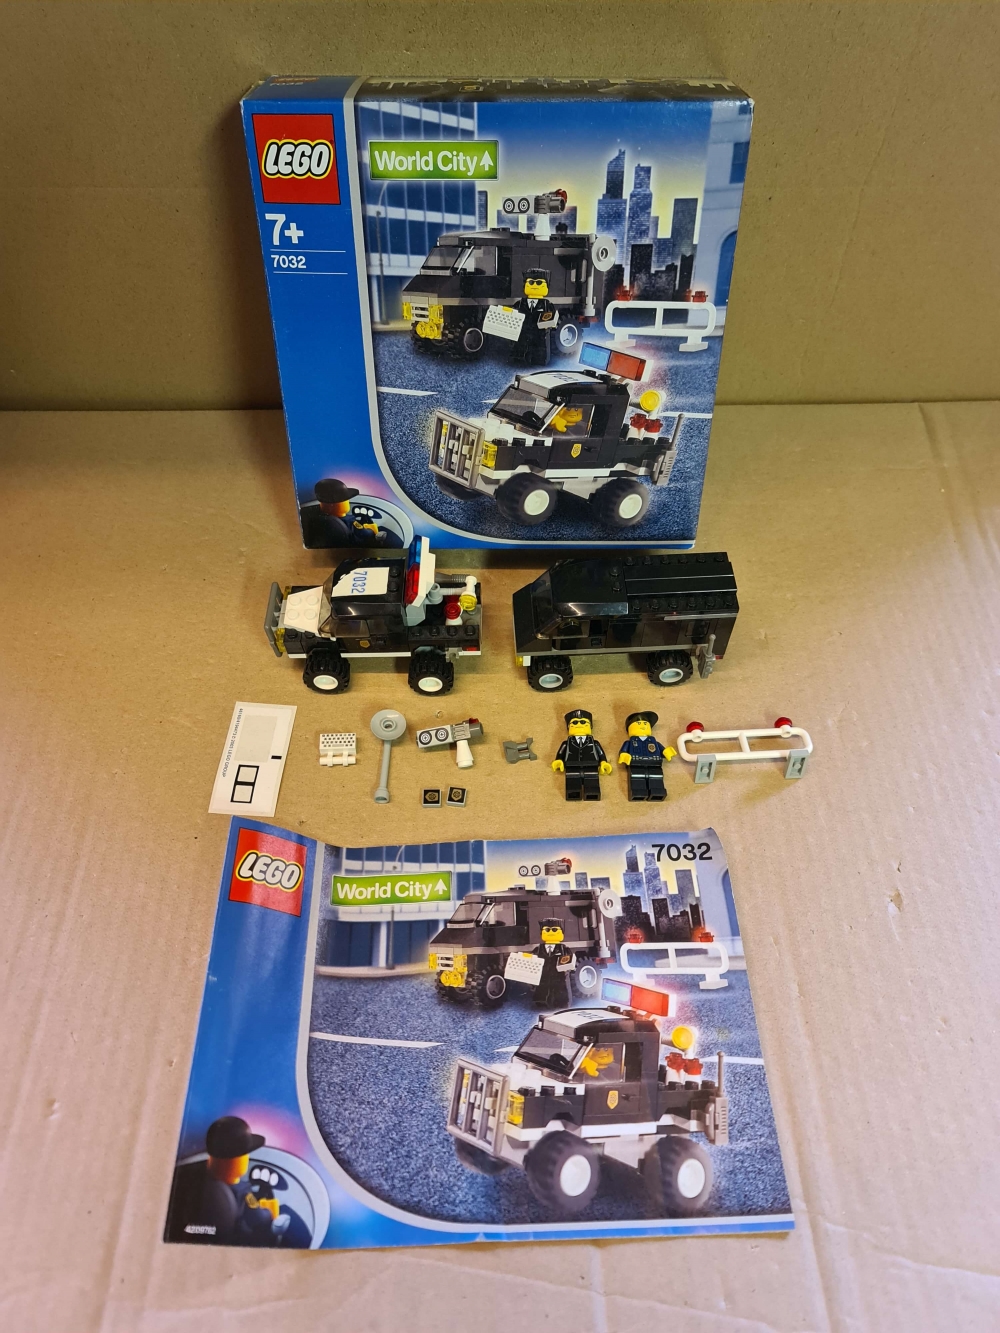 Sett 7032 fra Lego Town : World City serien.
Komplett med manual og eske.
Ett av klistremerkene begynner å bli dårlig.